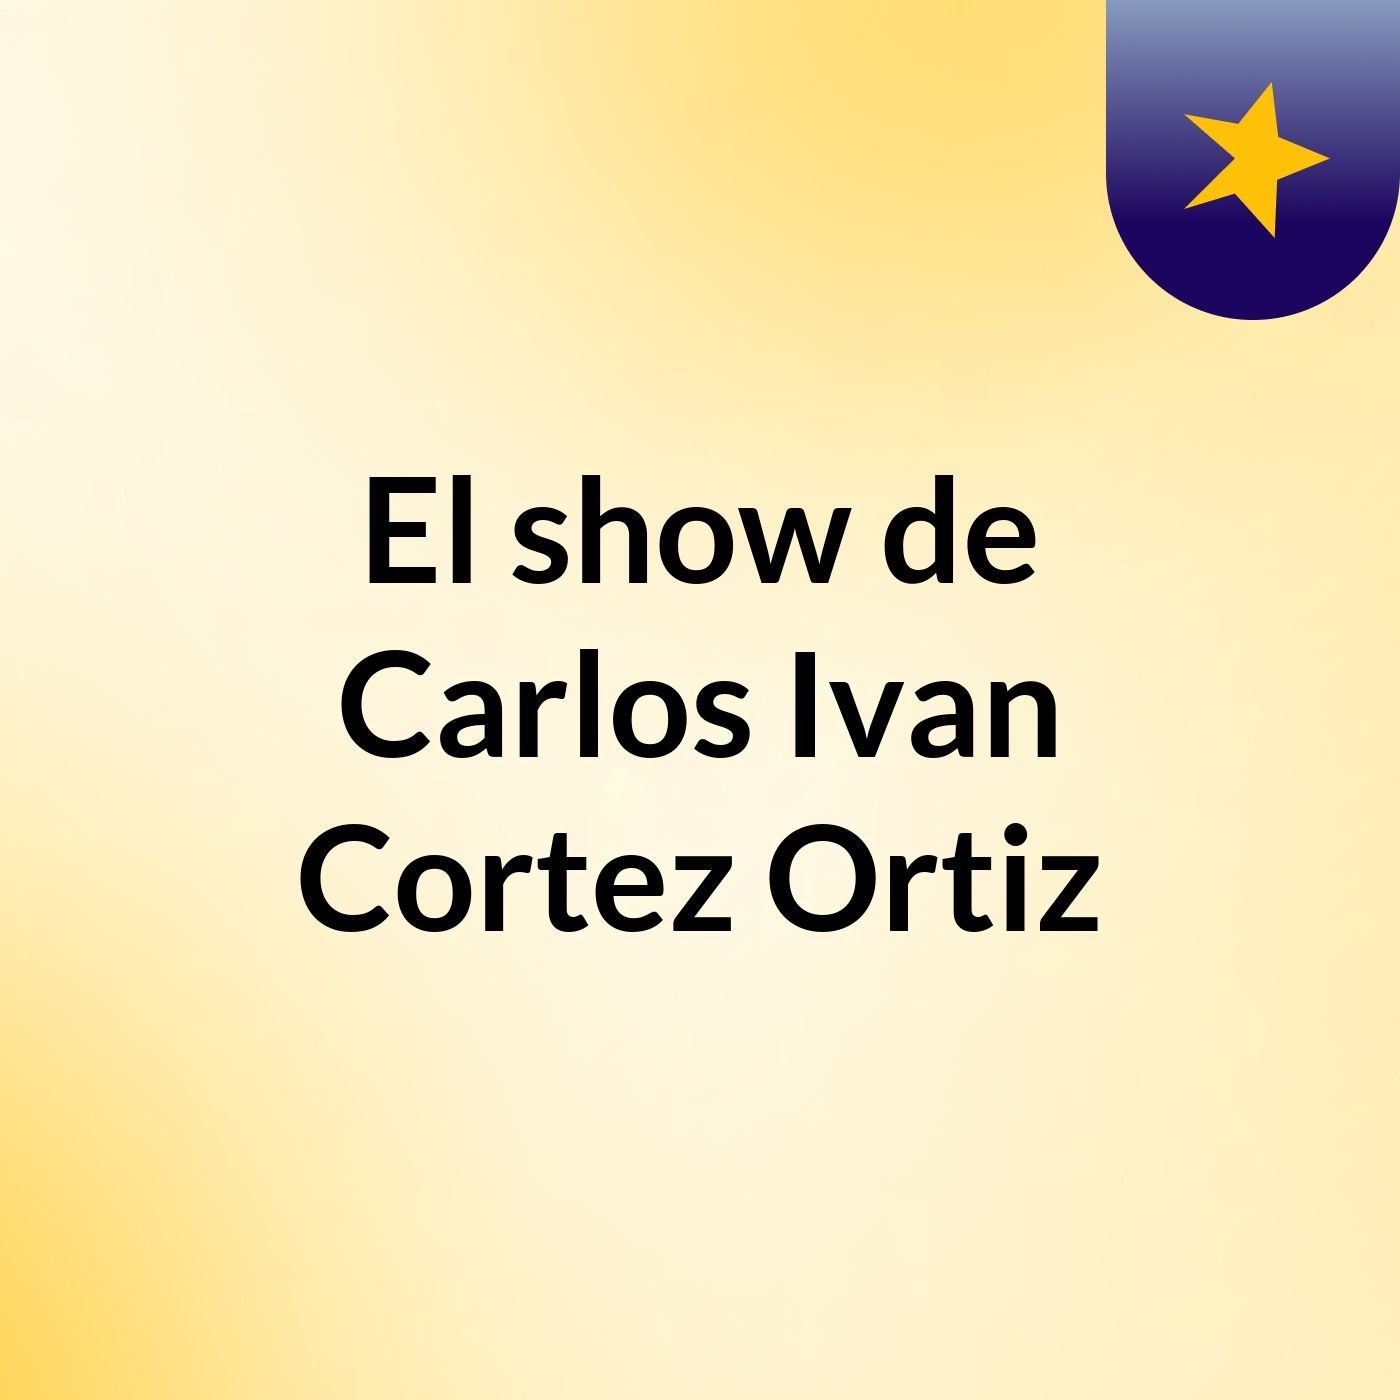 El show de Carlos Ivan Cortez Ortiz